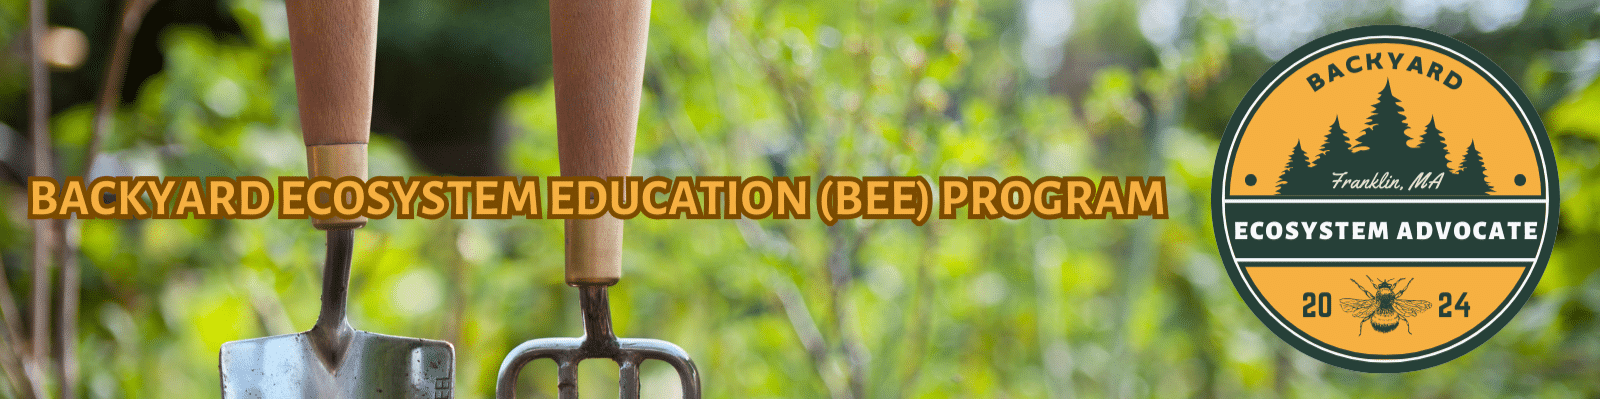 Backyard Ecosystem Education (BEE)